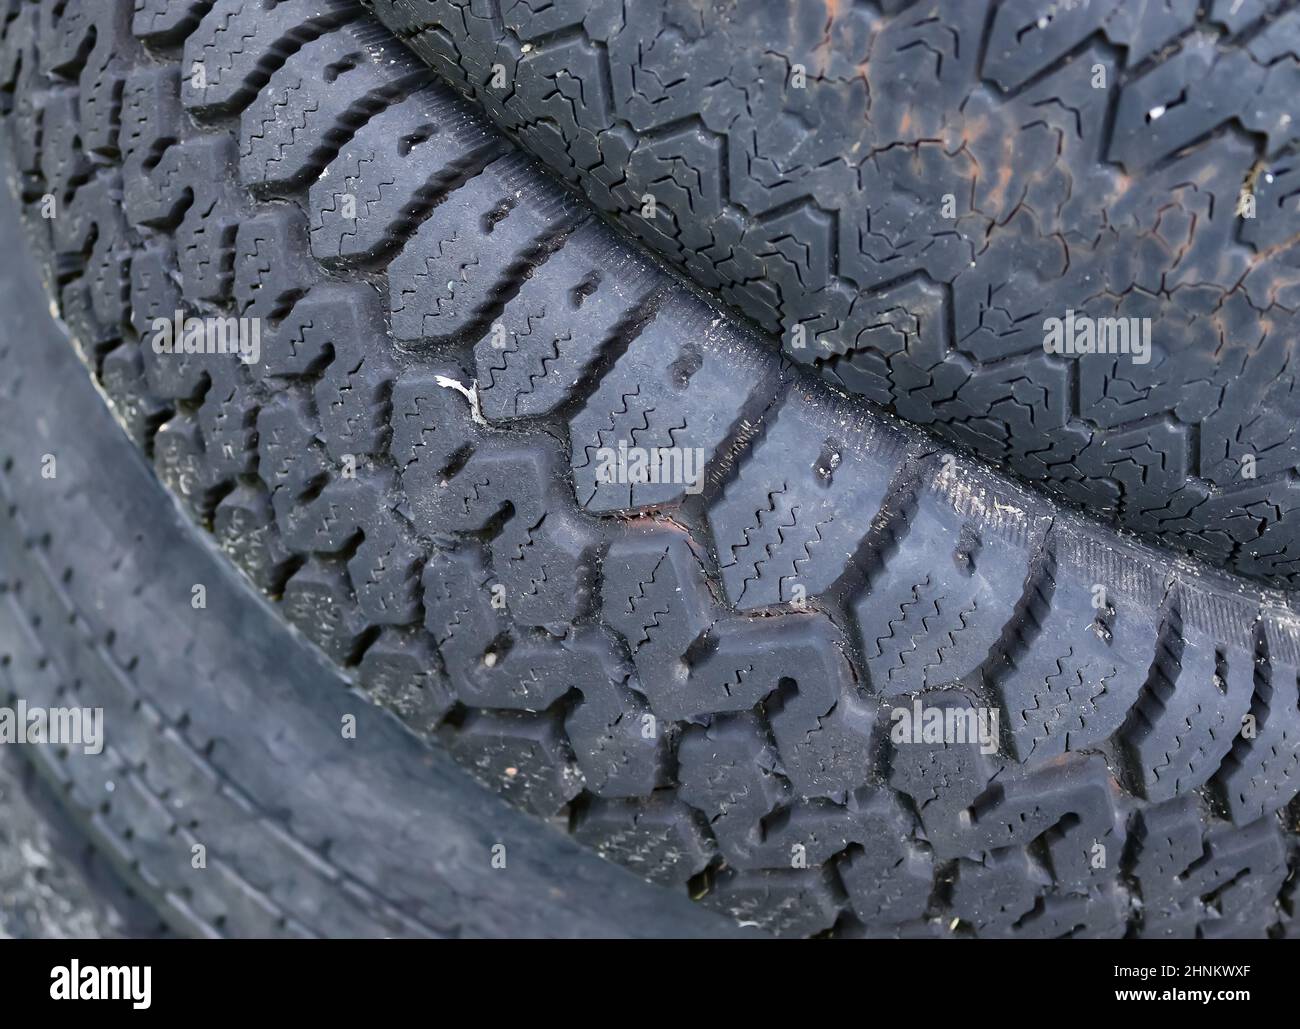 Beschädigte und abgenutzte alte schwarze Reifen auf einem Stapel. Beschädigte und abgenutzte alte schwarze Reifen auf einem Stapel. Probleme mit der Reifenlauffläche. Lösungskonzept. Probleme mit der Reifenlauffläche. Stockfoto